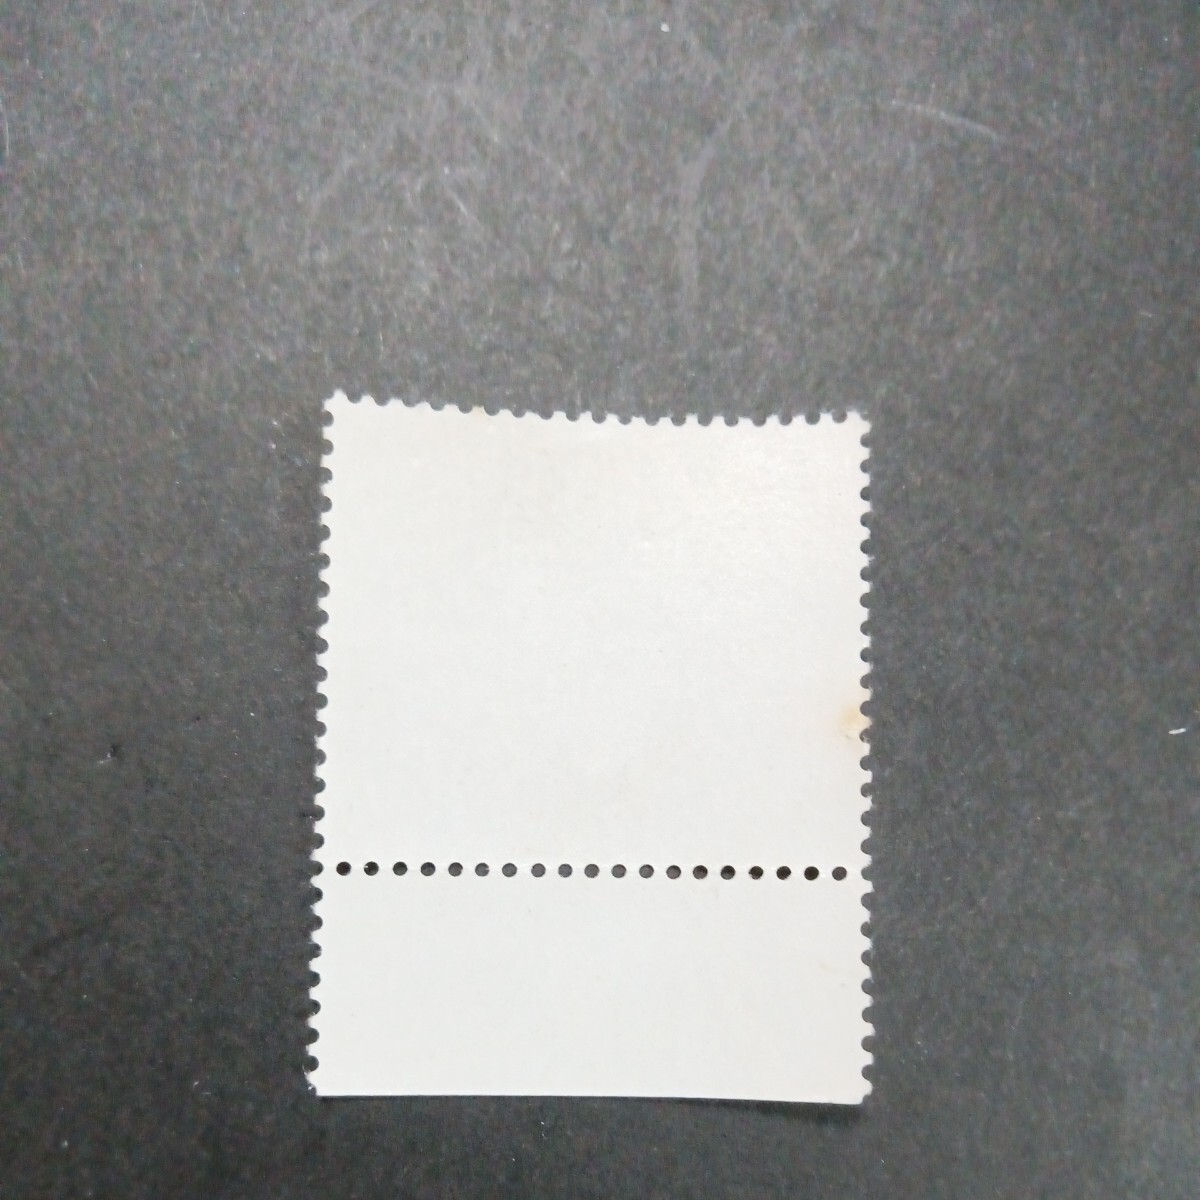 銘版（大蔵省印刷局製造)姫路城修理完成記念 1964 10円切手の画像2